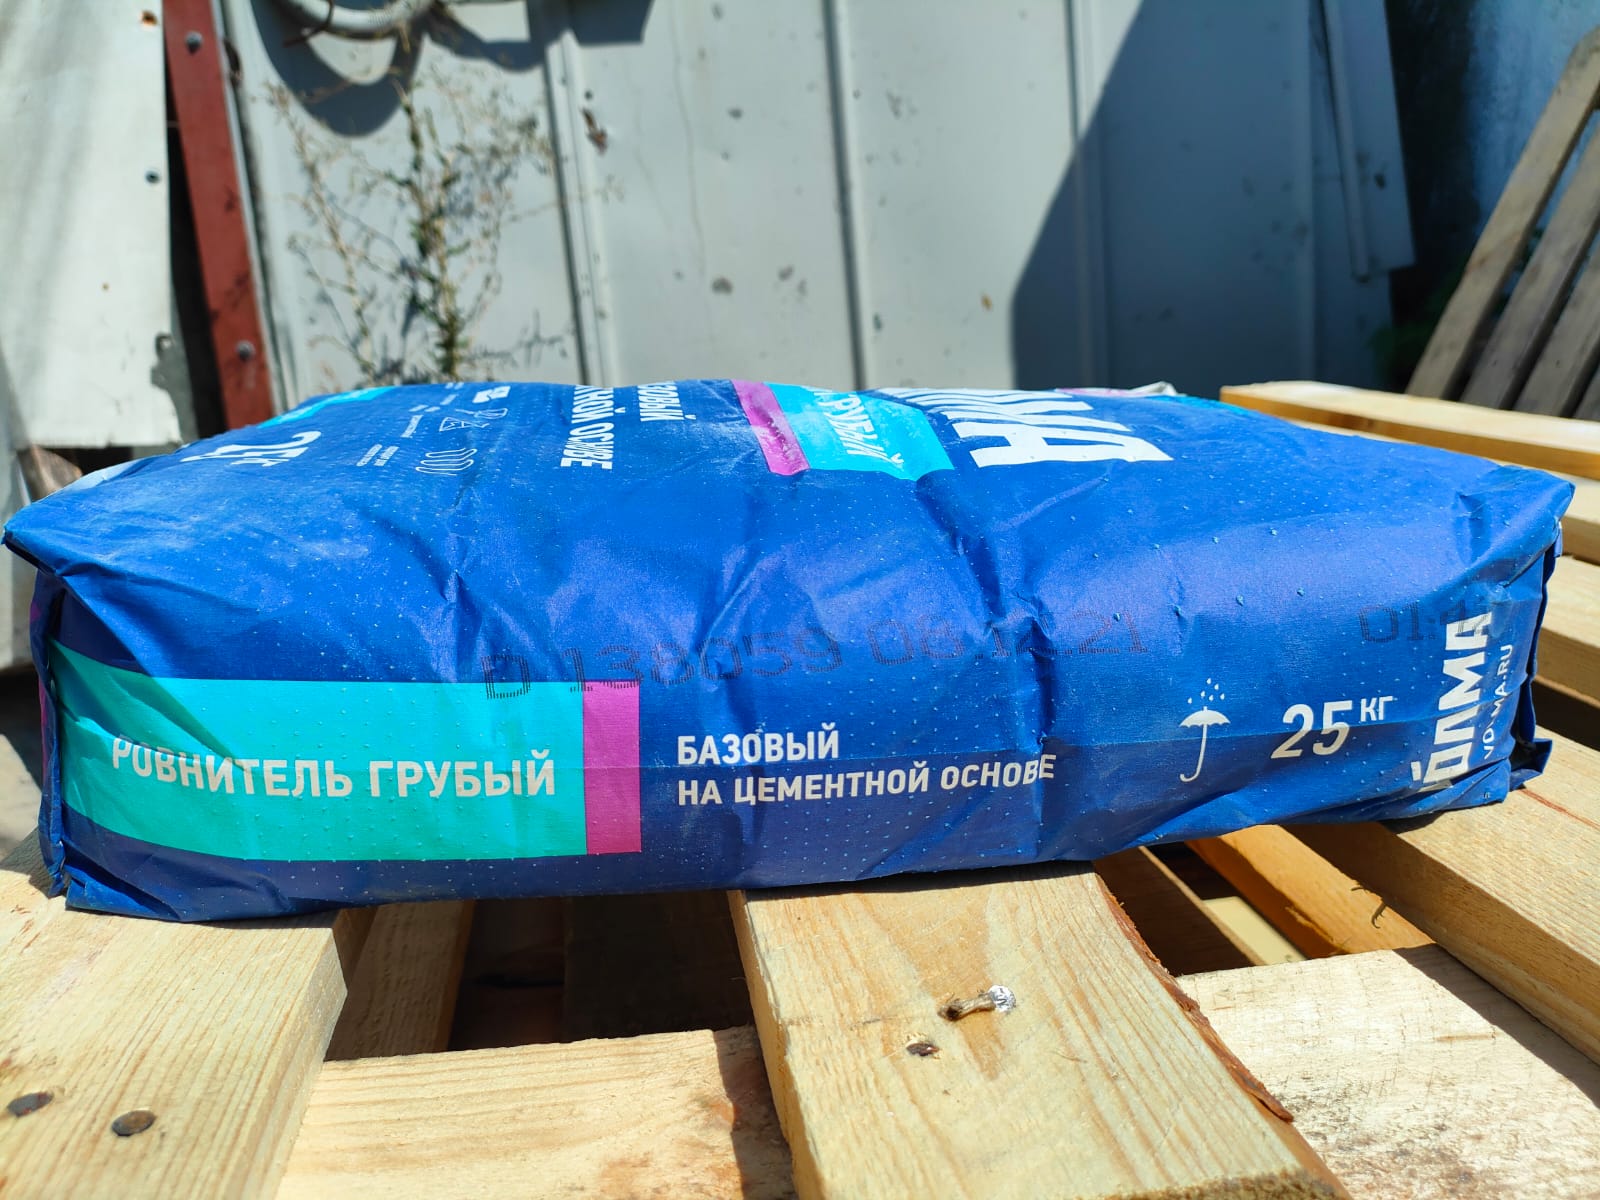 Напольная цементная смесь (стяжка) ВОЛМА ровнитель грубый 25 кг (ВТР)